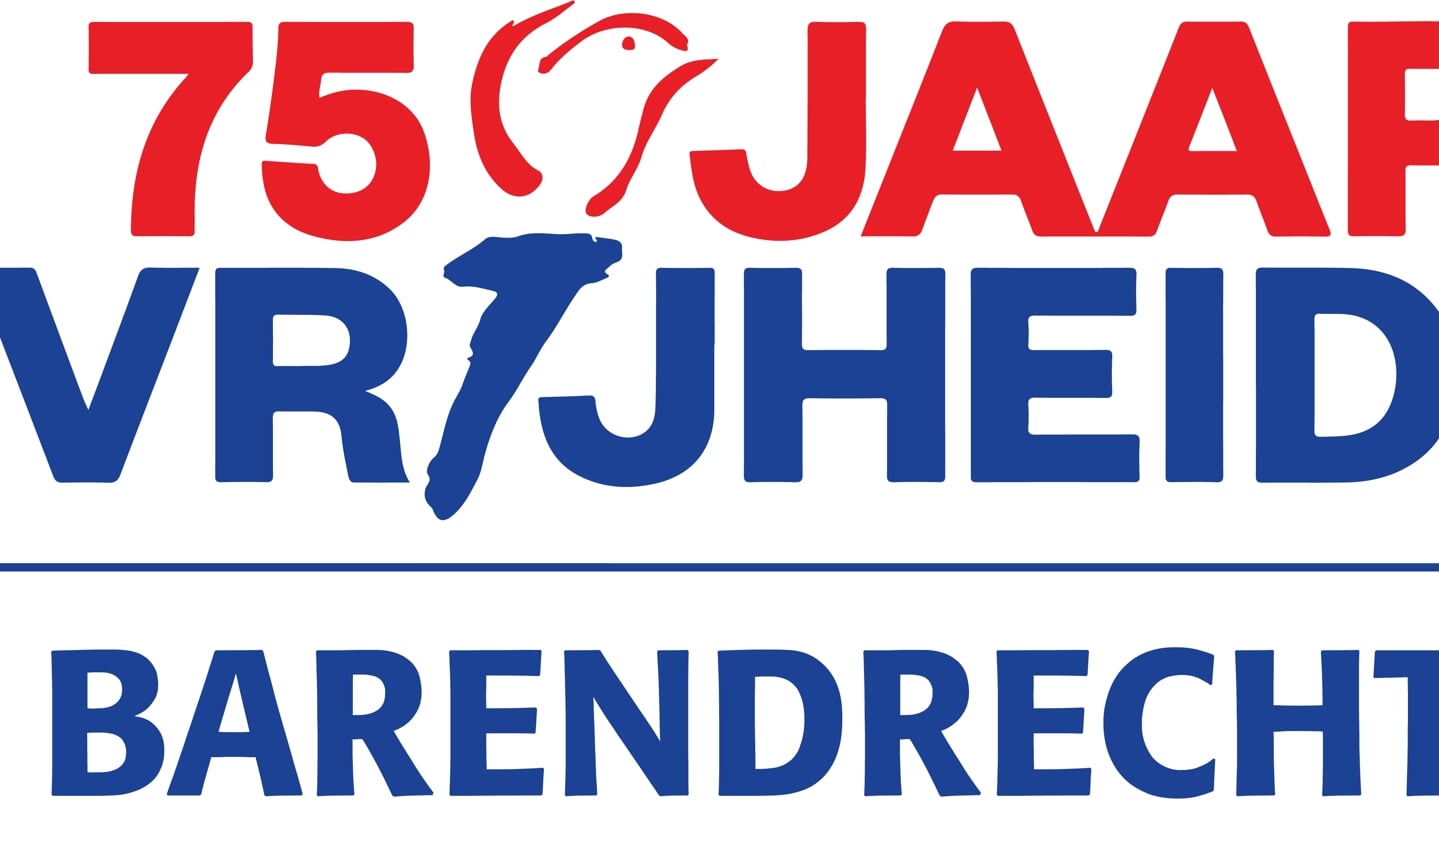 Het logo dat wordt gebruikt voor de activiteiten in Barendrecht.